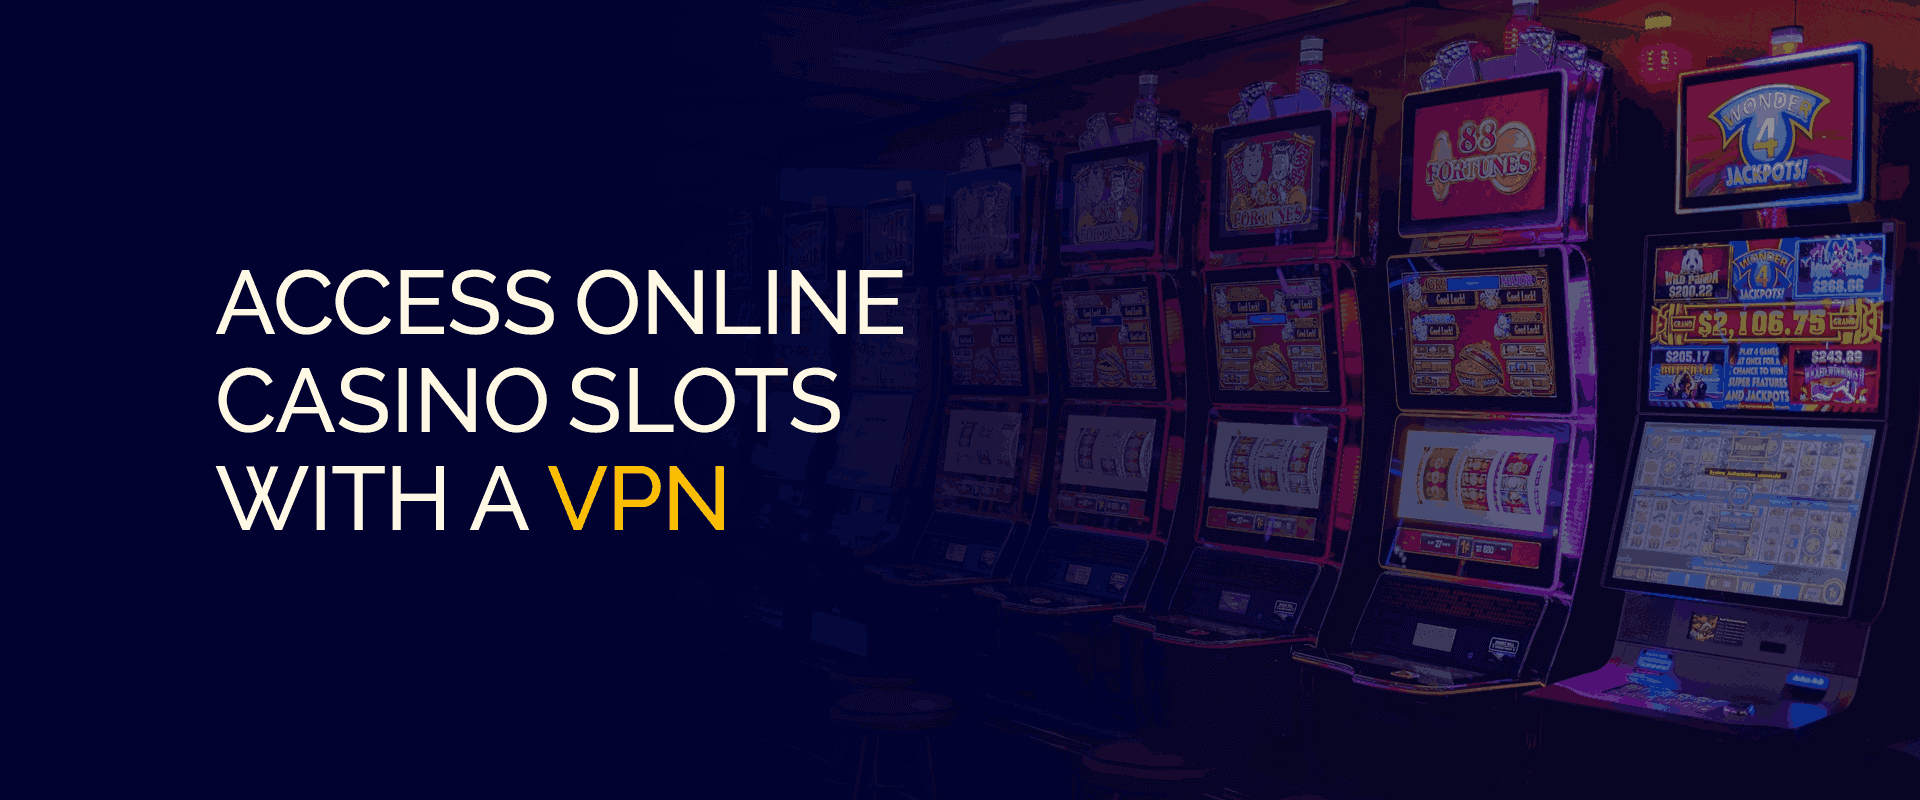 Zougang zu Online Casino Slots mat engem VPN